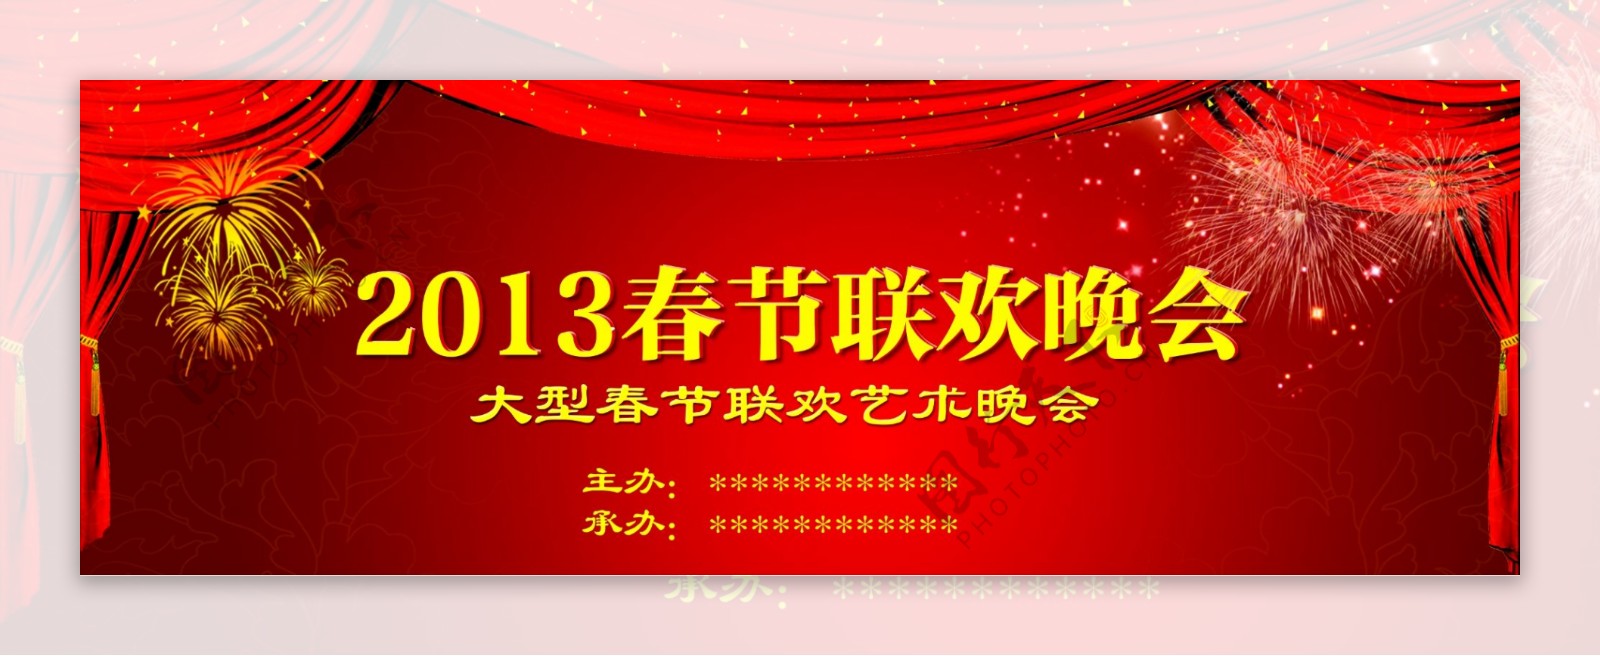 2013年春节联欢晚会